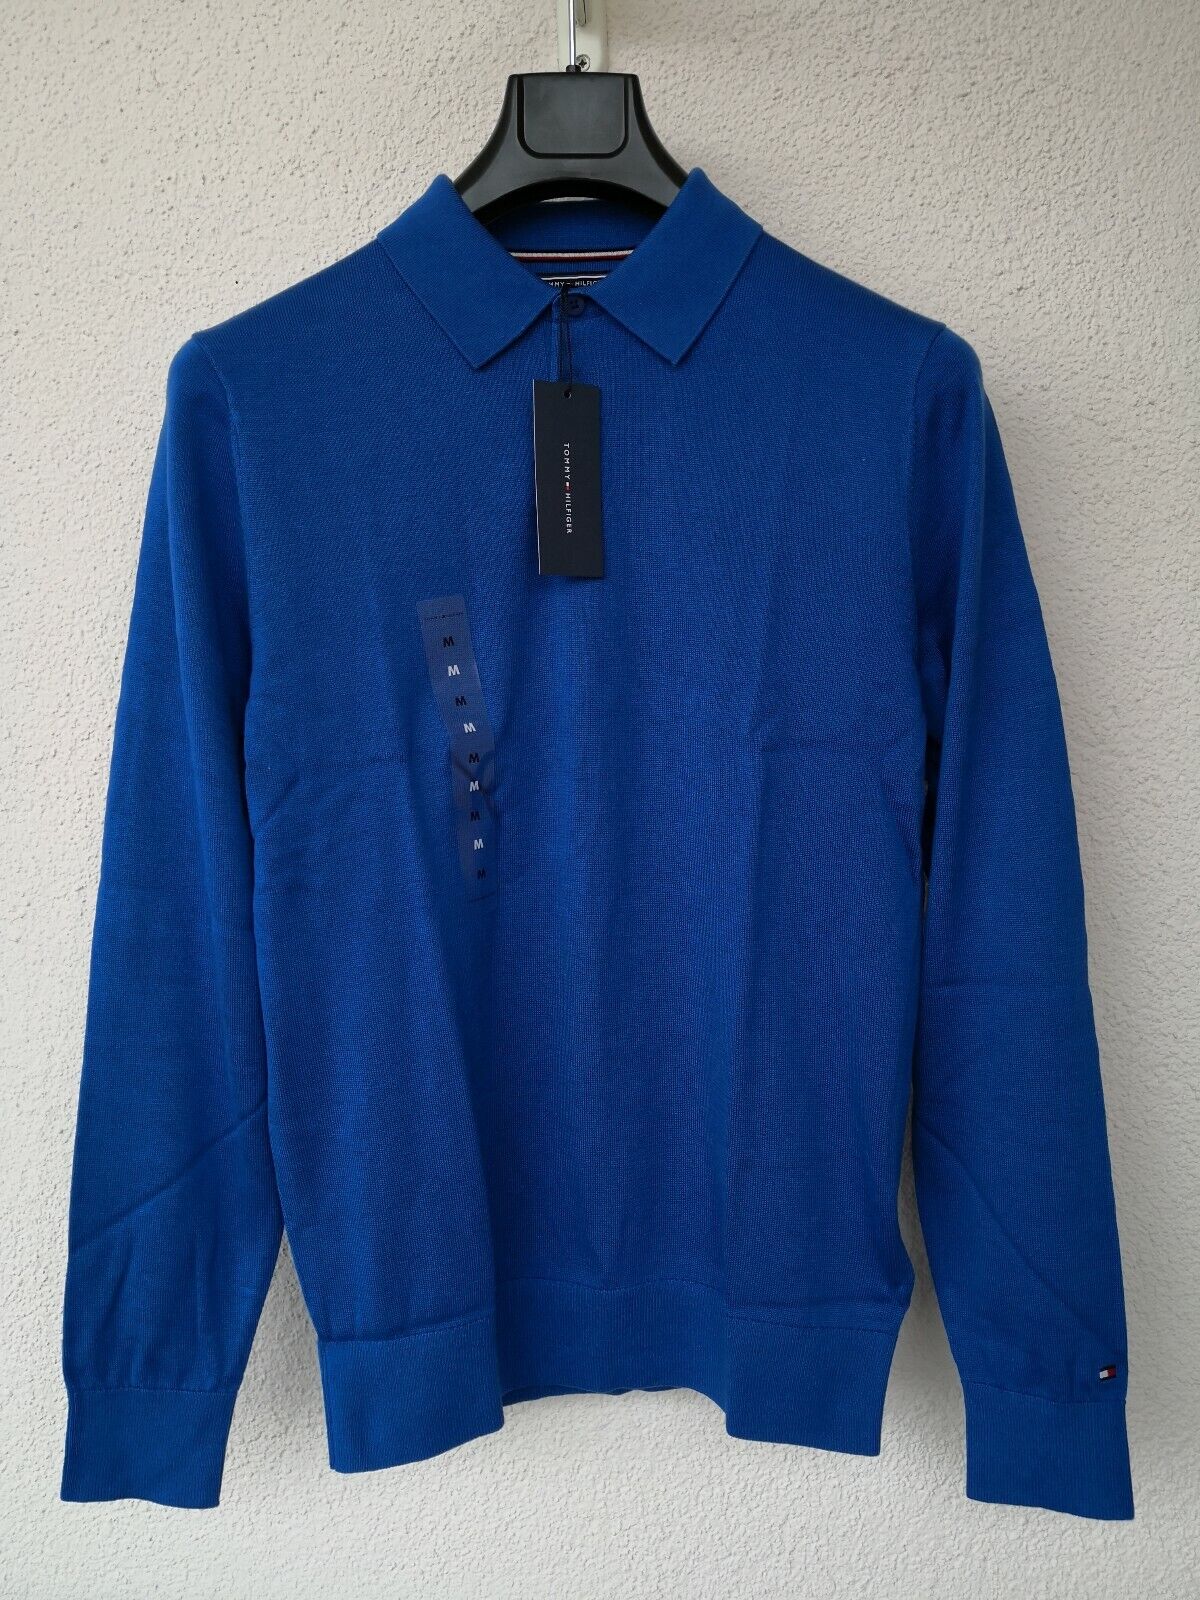 Tommy Hilfiger Pullover Cotton Silk Blau Größe M